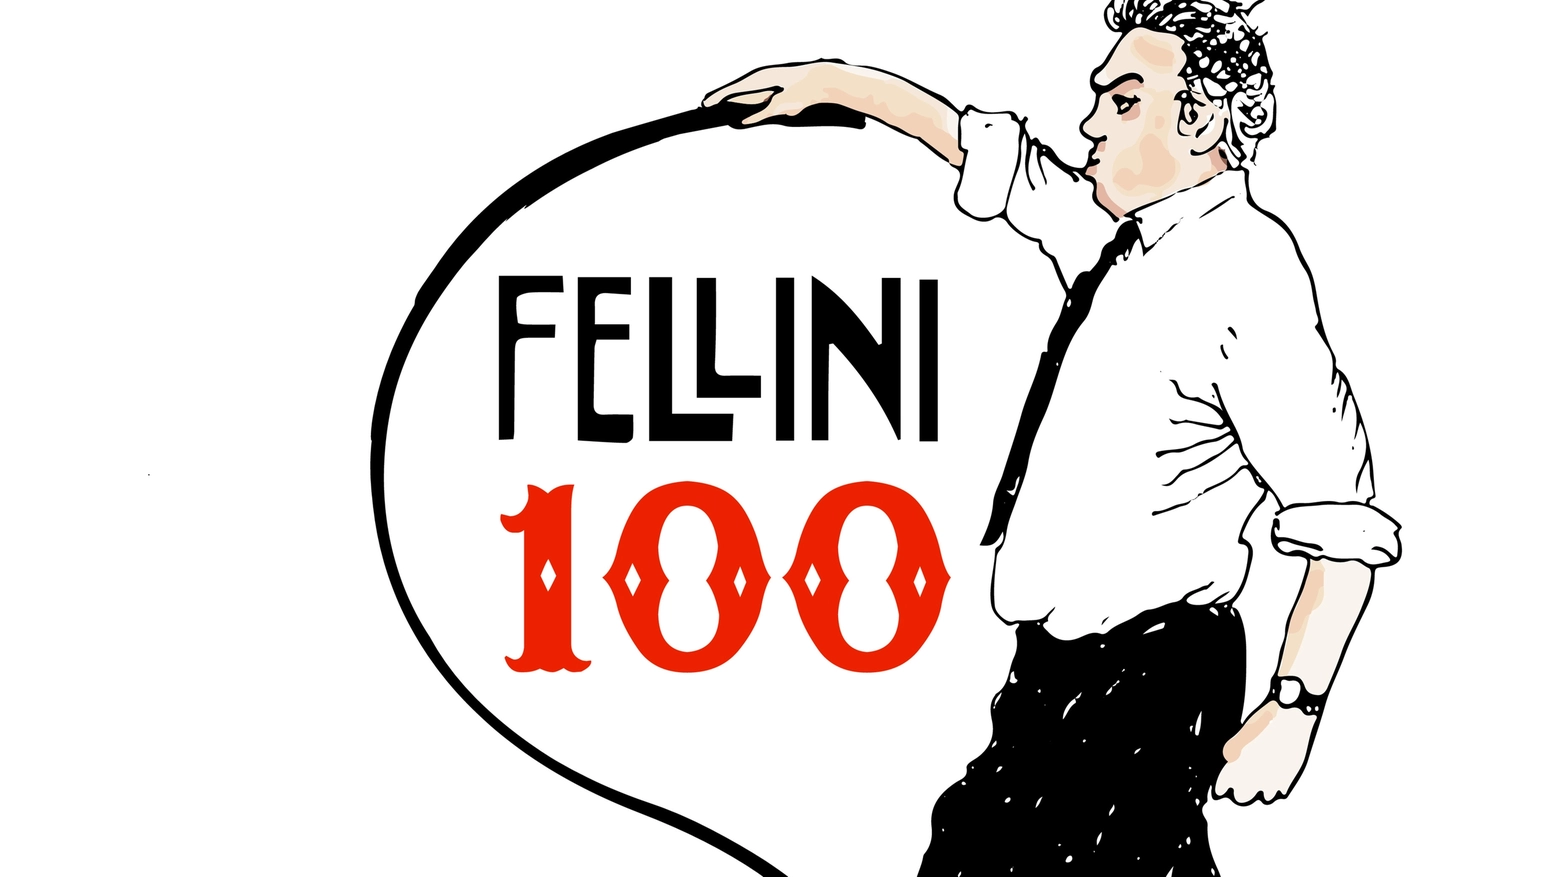 Federico Fellini, il 20 gennaio si celebra il centenario